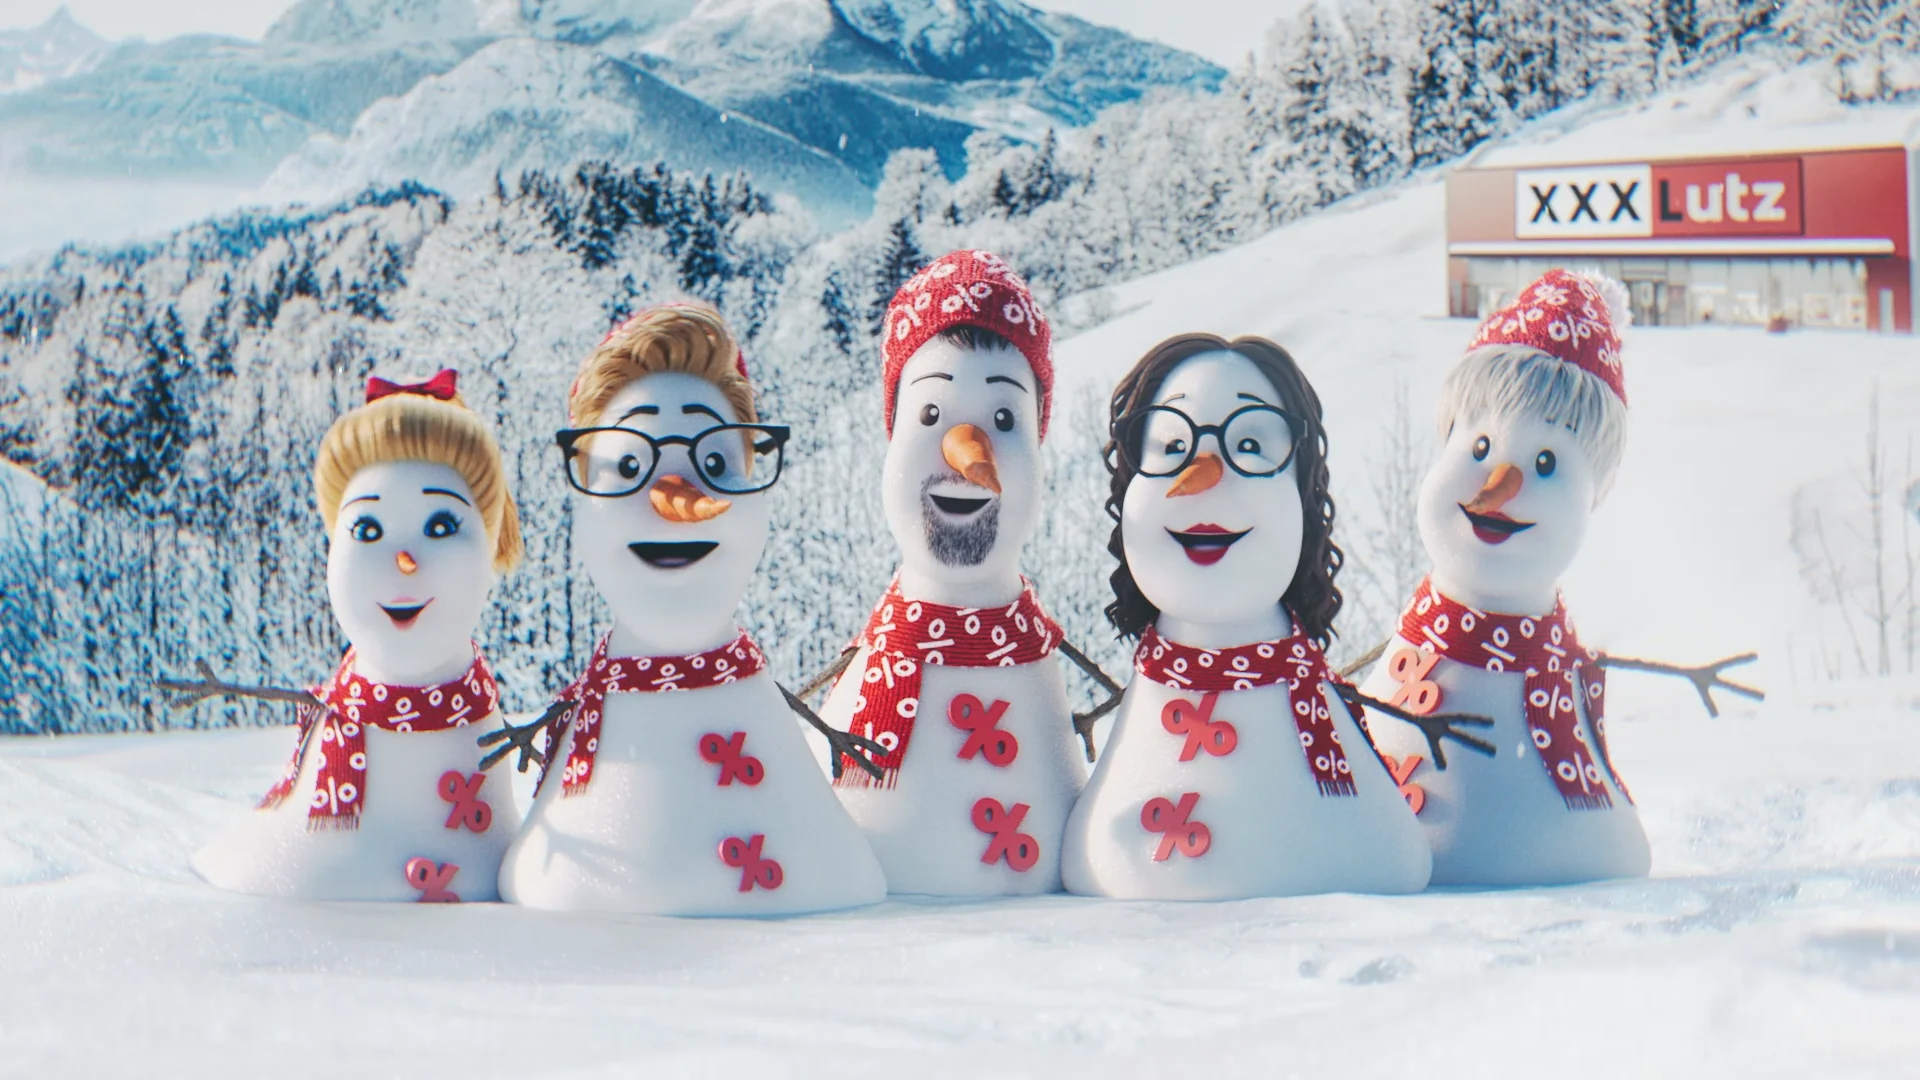 we see 5 human-like snowmen/women in a winter landscape in front of a xxxlutz furniture store